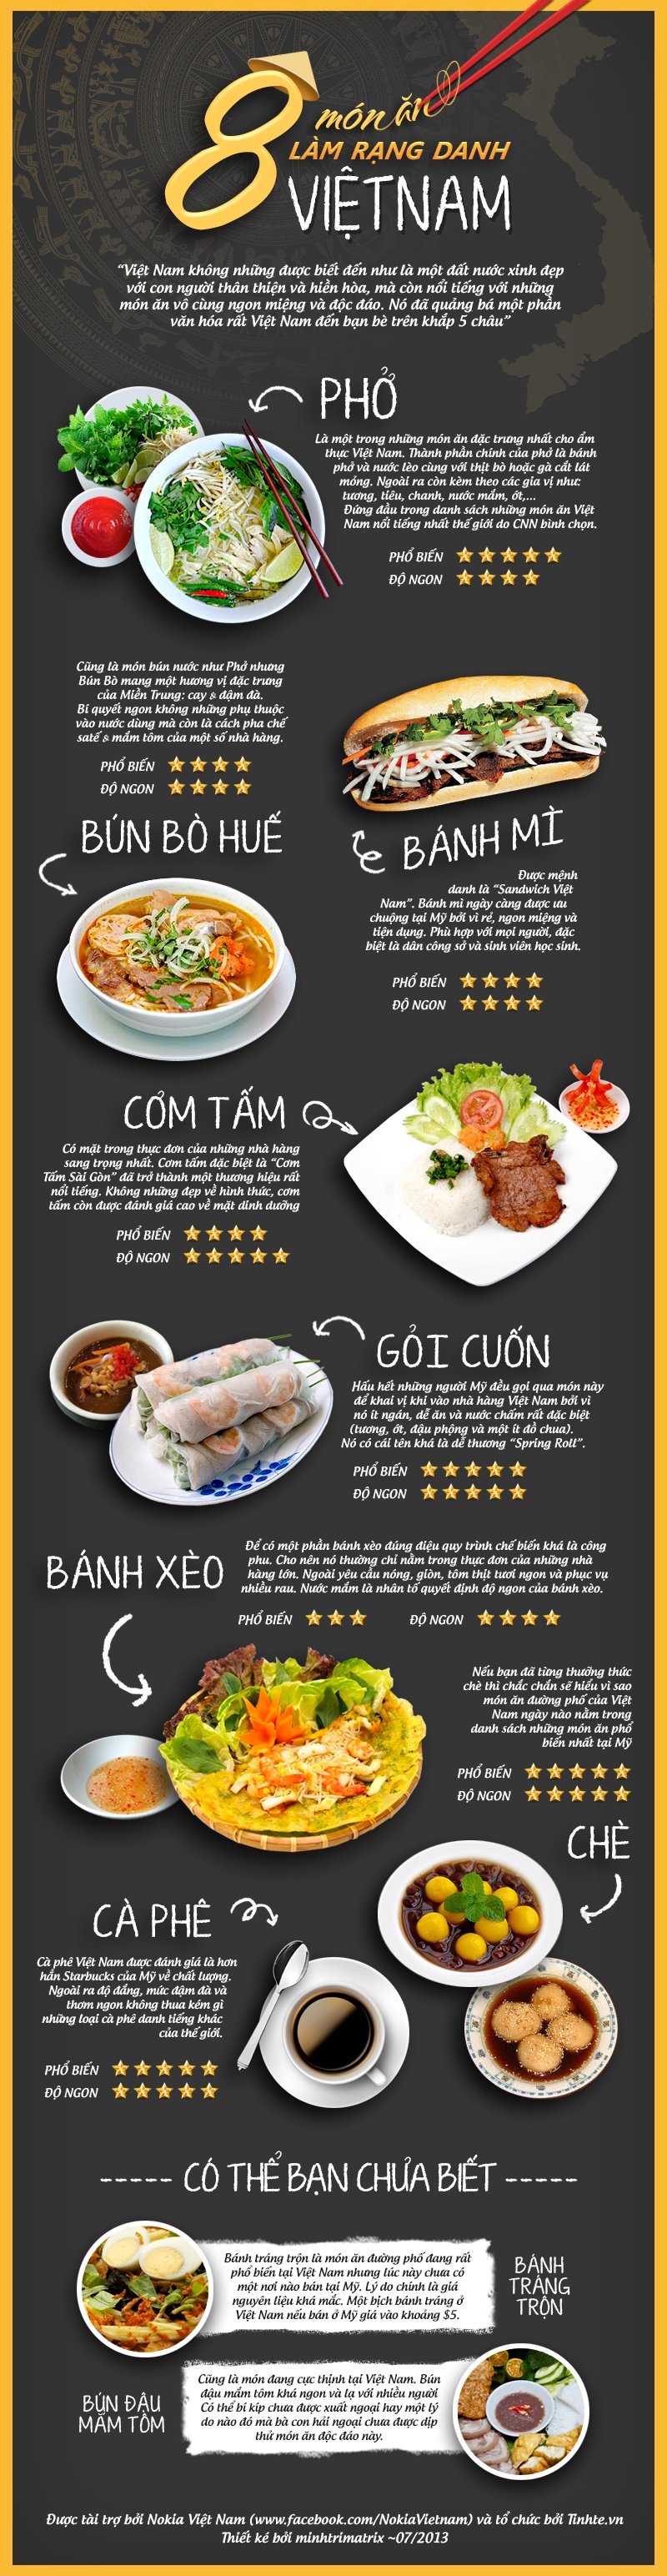 8 món ăn rạng danh Việt nam